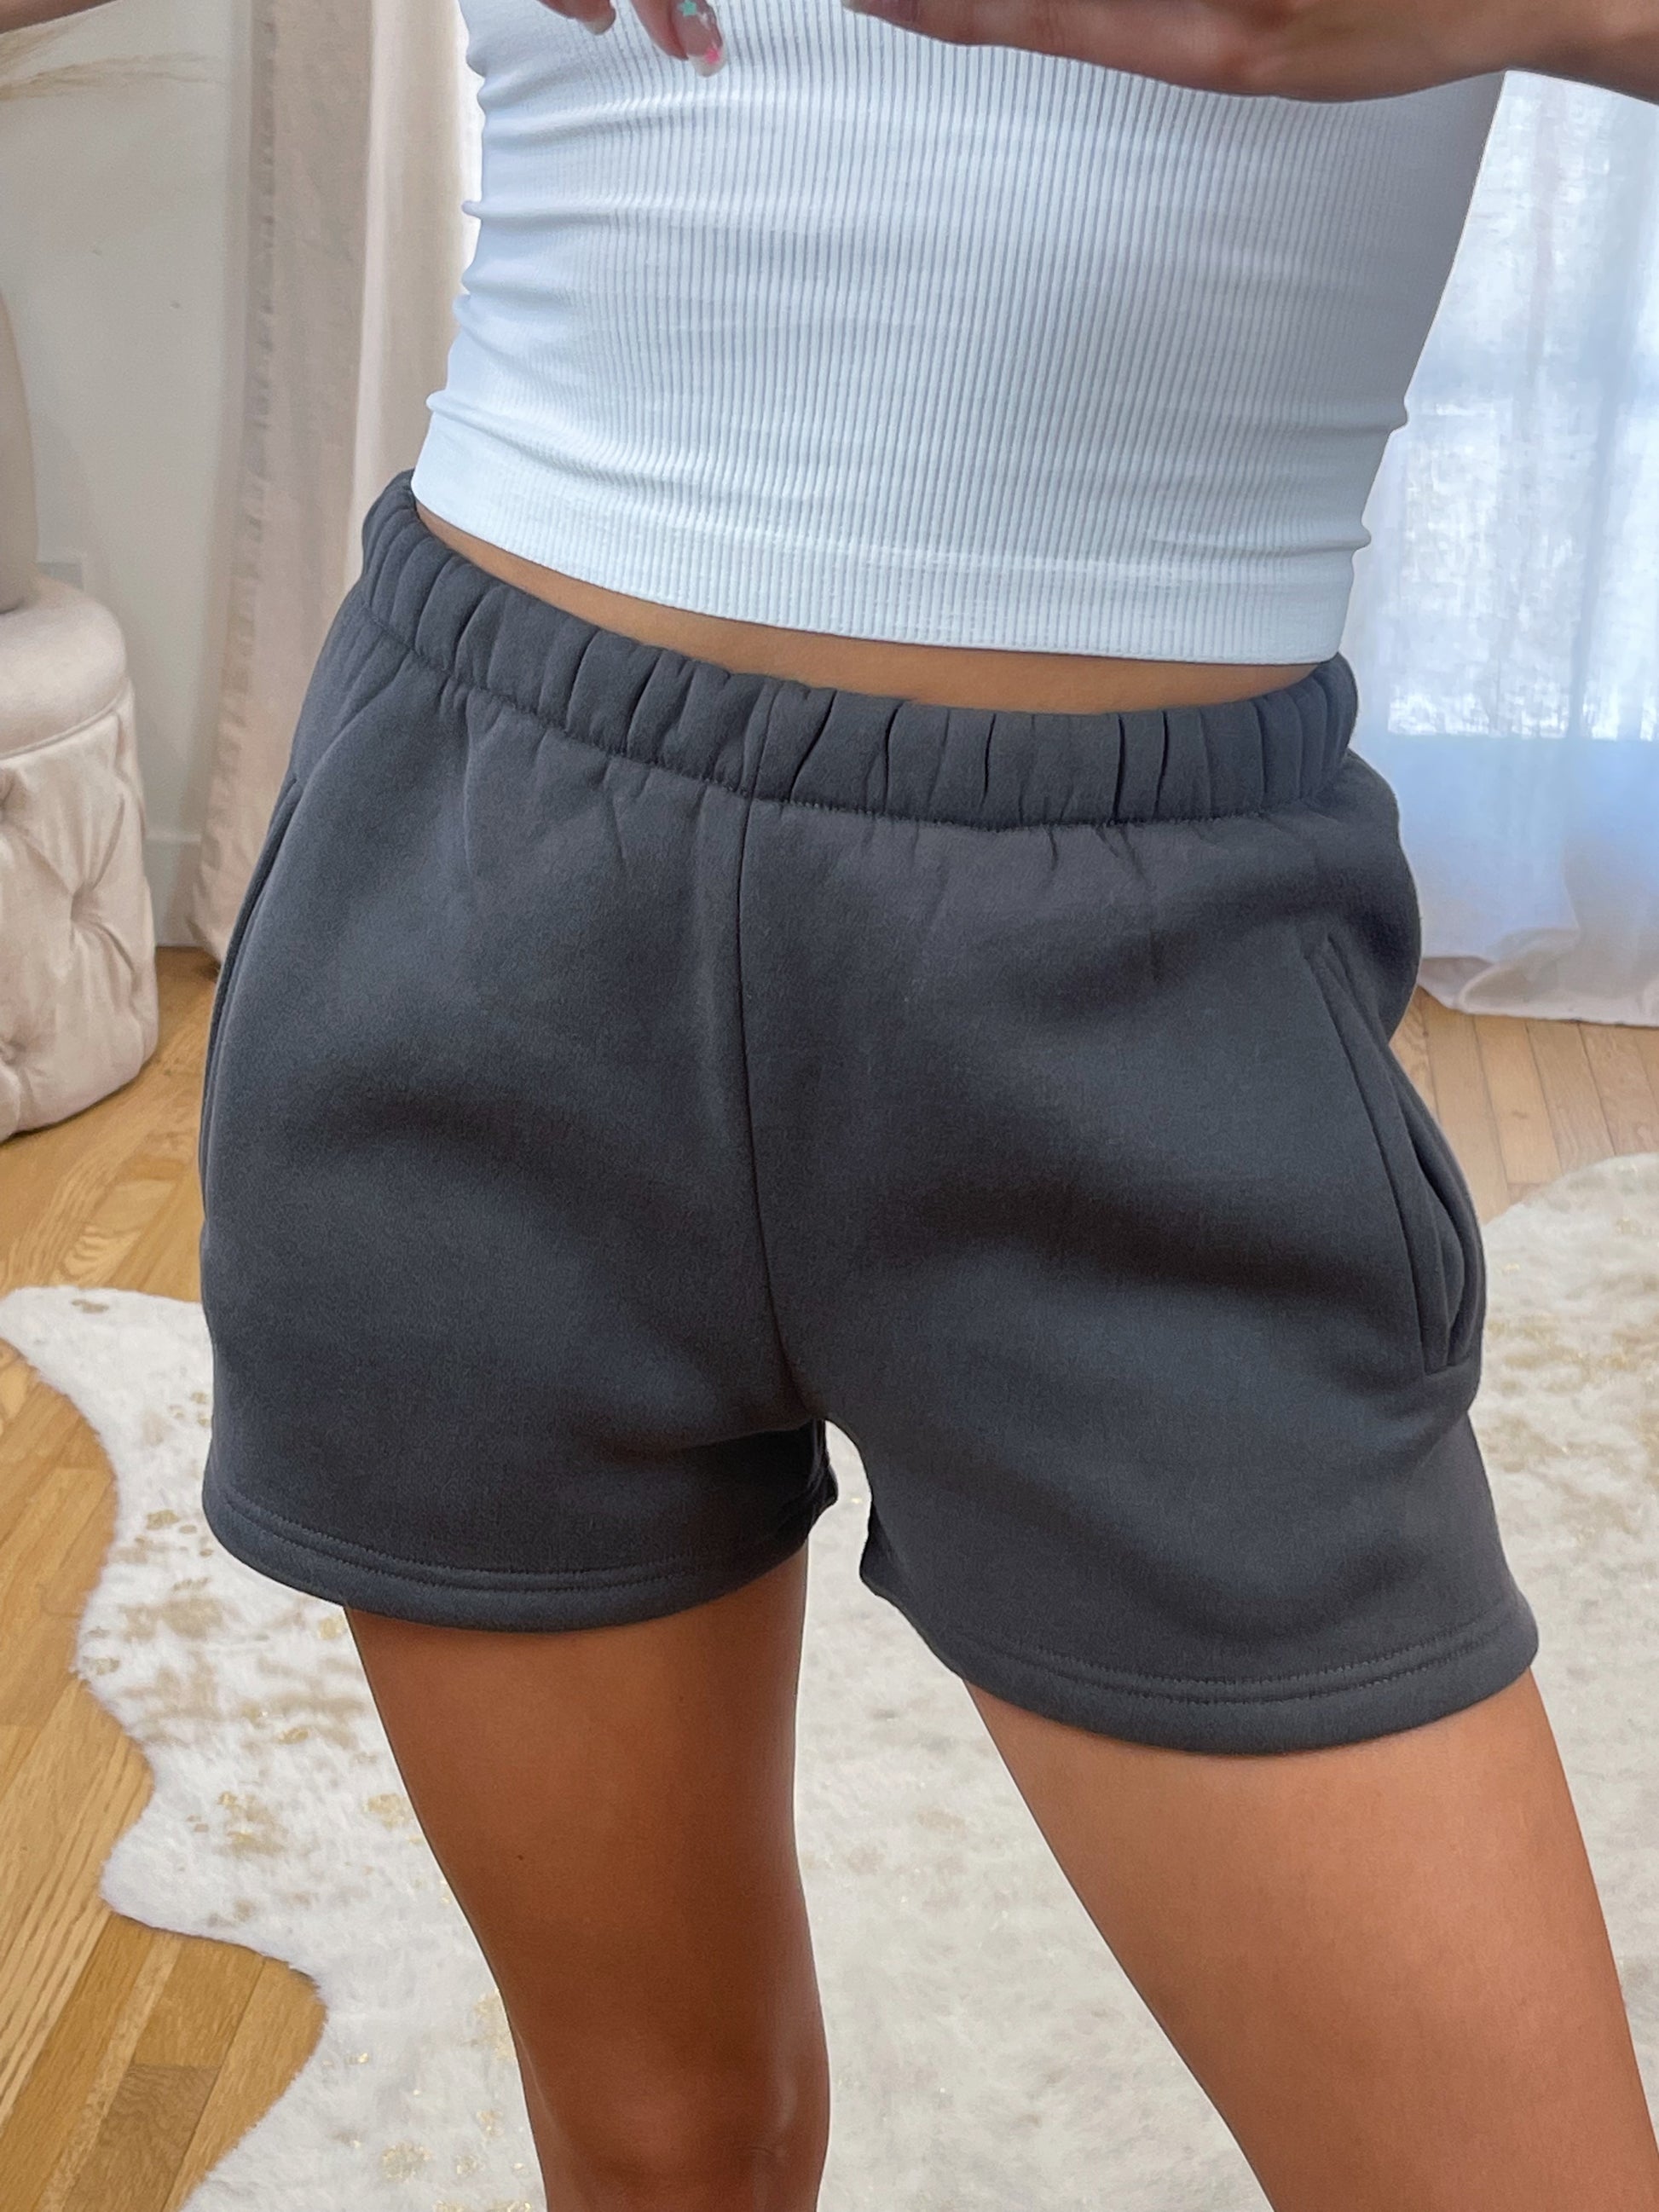 Comfort Shorts – Vyvacious